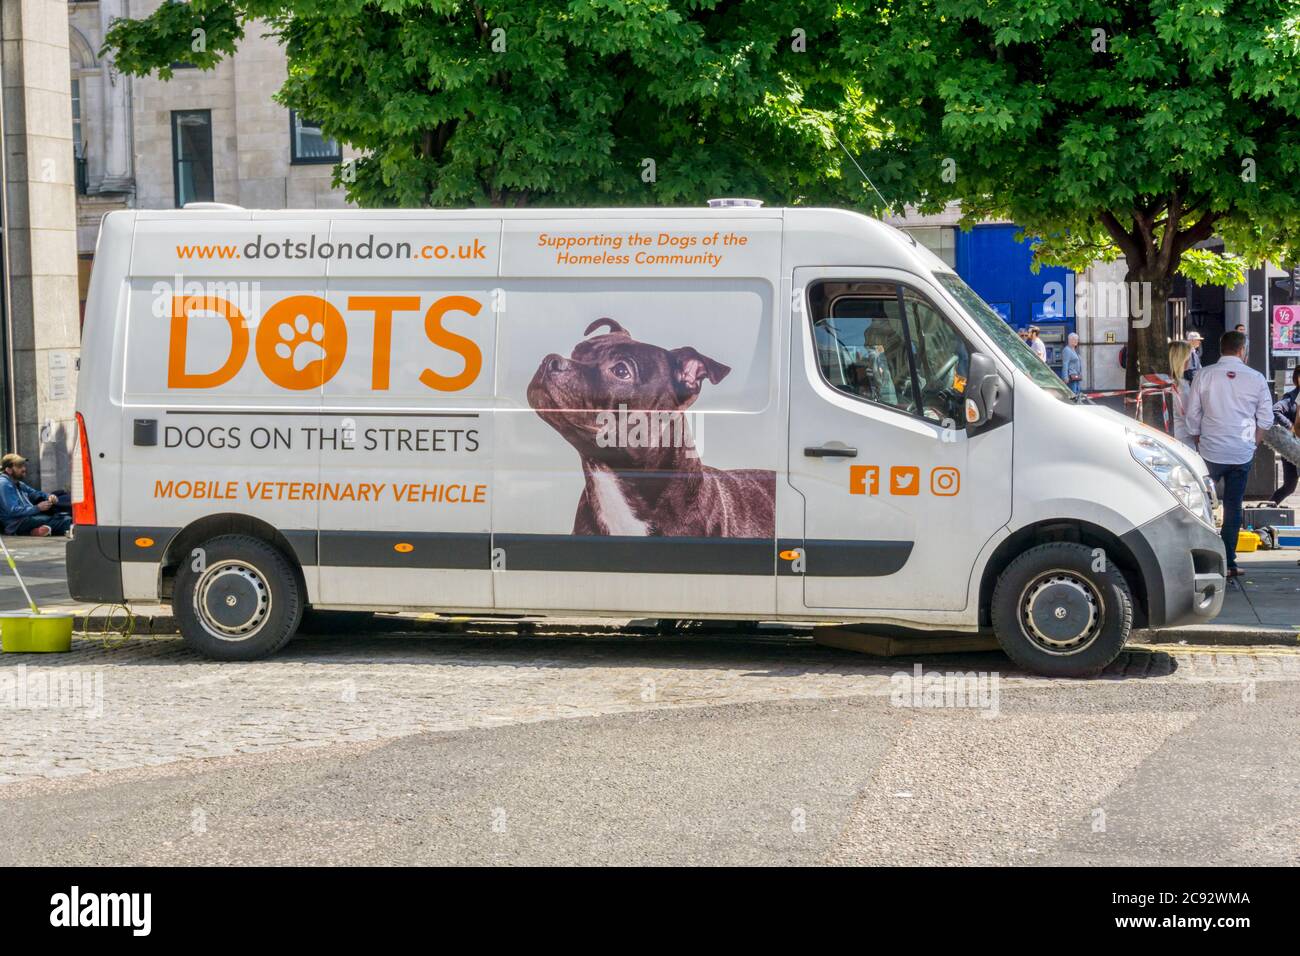 DOTS Dogs on the Streets veicolo veterinario mobile che sostiene i cani della comunità senza tetto a Londra. Foto Stock